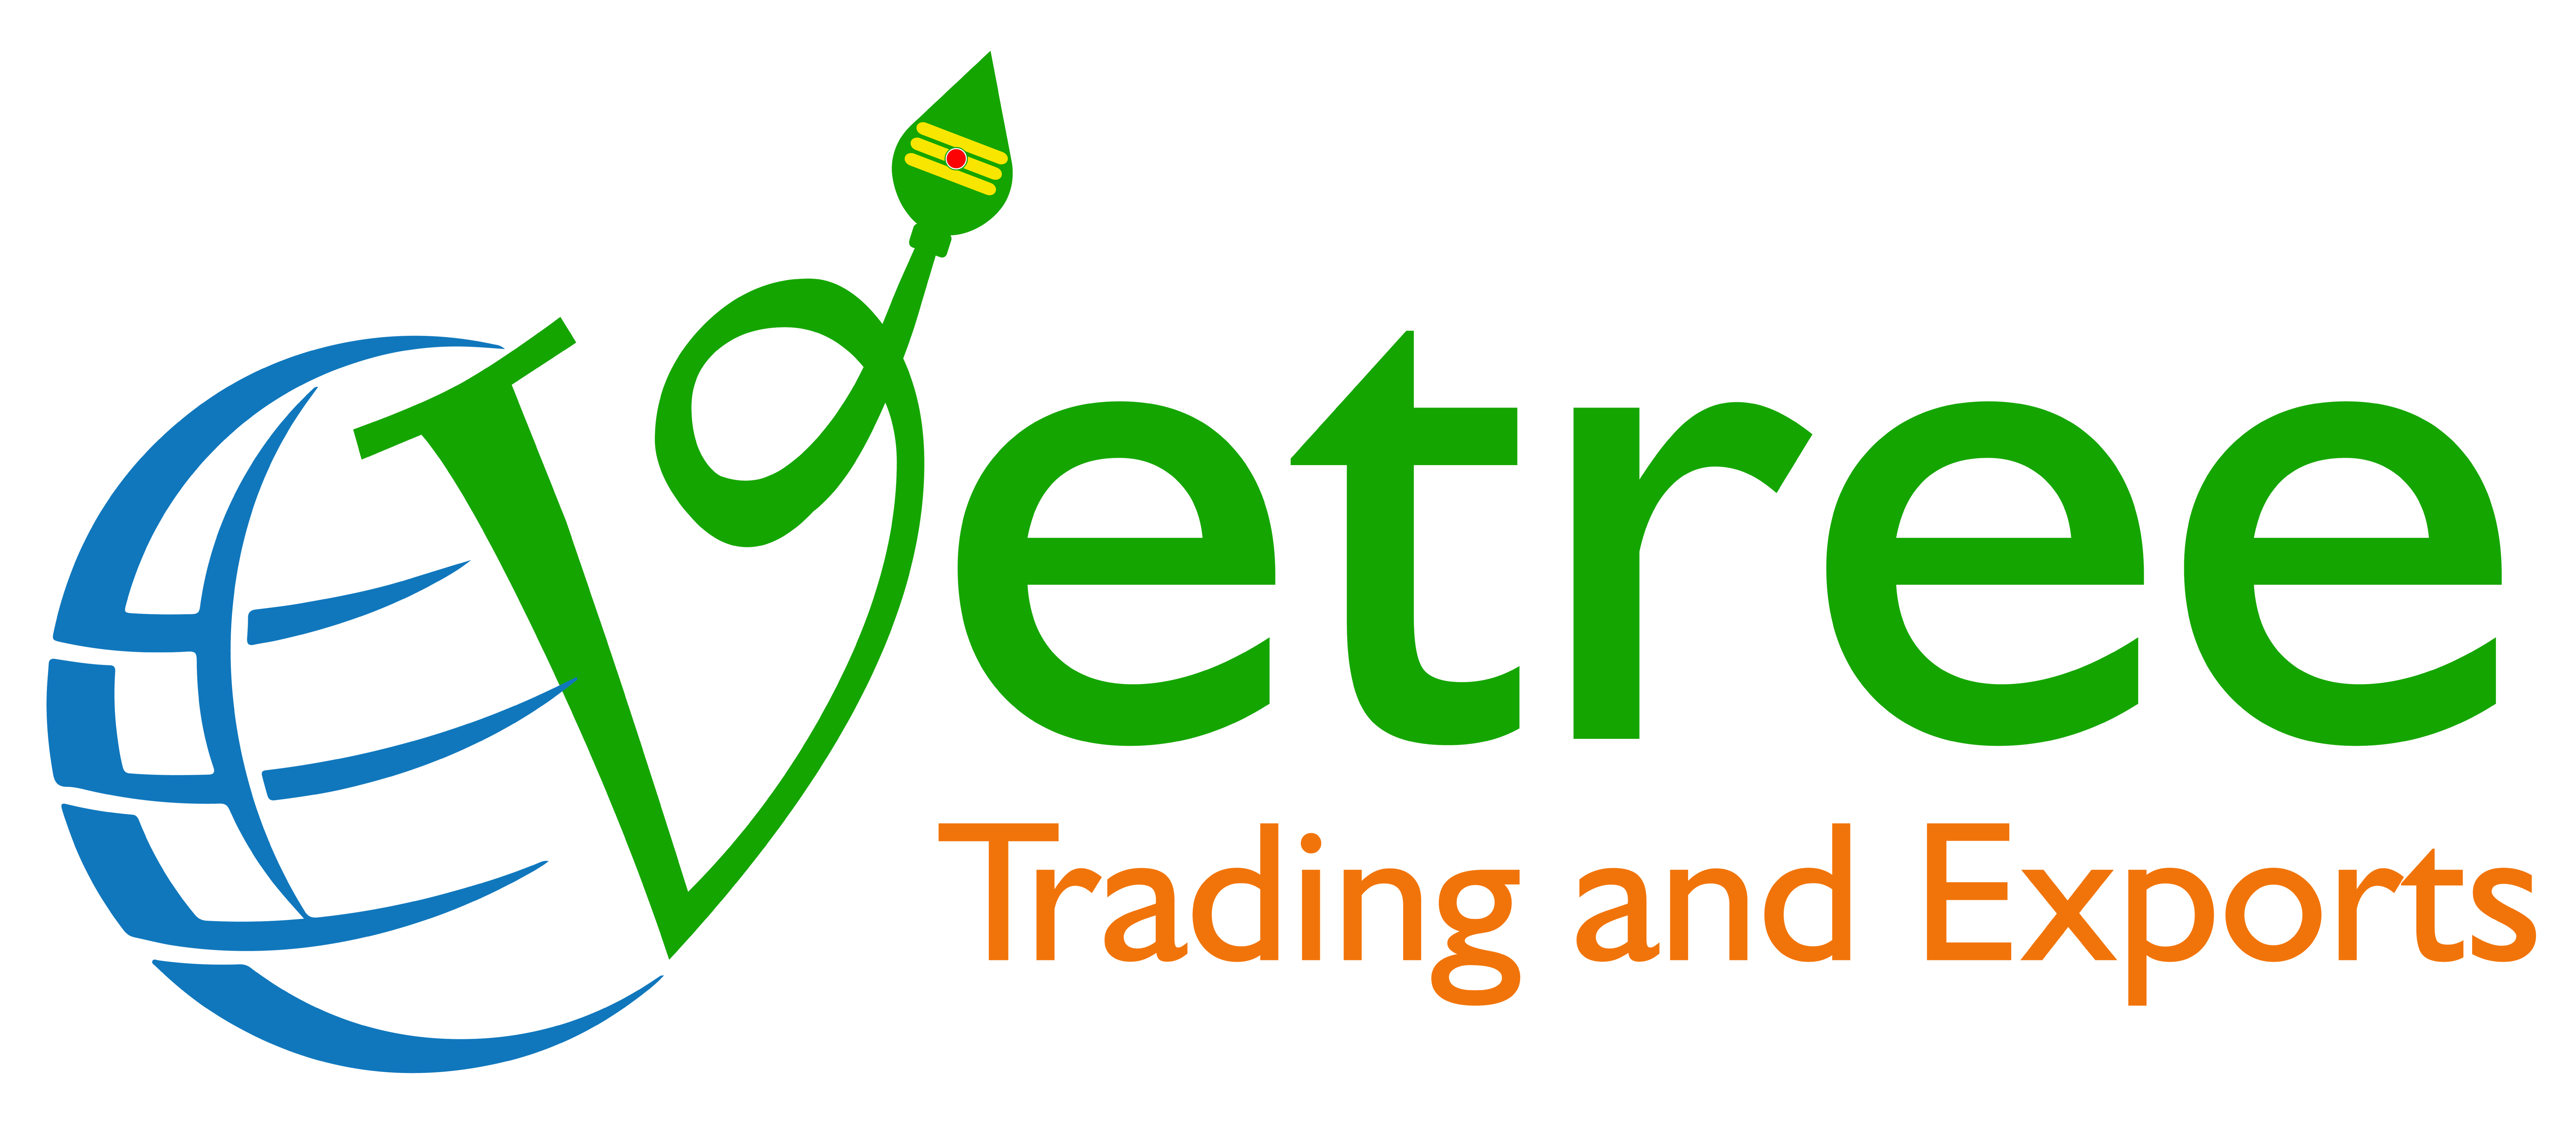 Vetree Trading & Exports